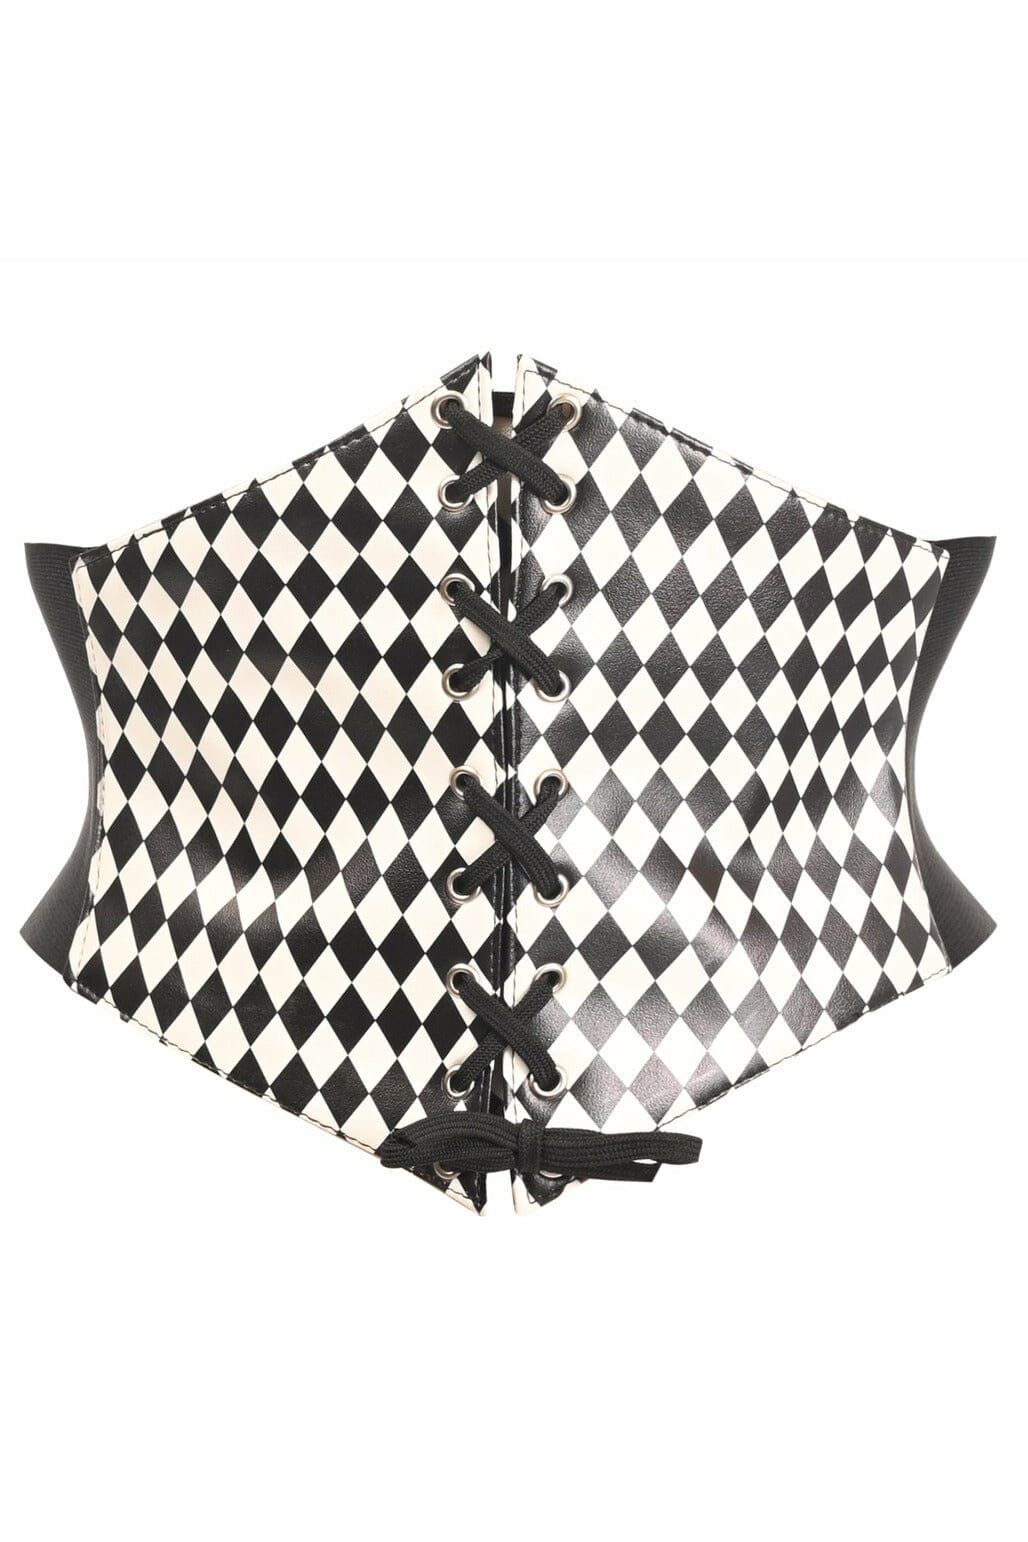 Lavish Black/White Diamond Lace-Up Corset Belt Cincher-Corset Belts-Daisy Corsets-SEXYSHOES.COM